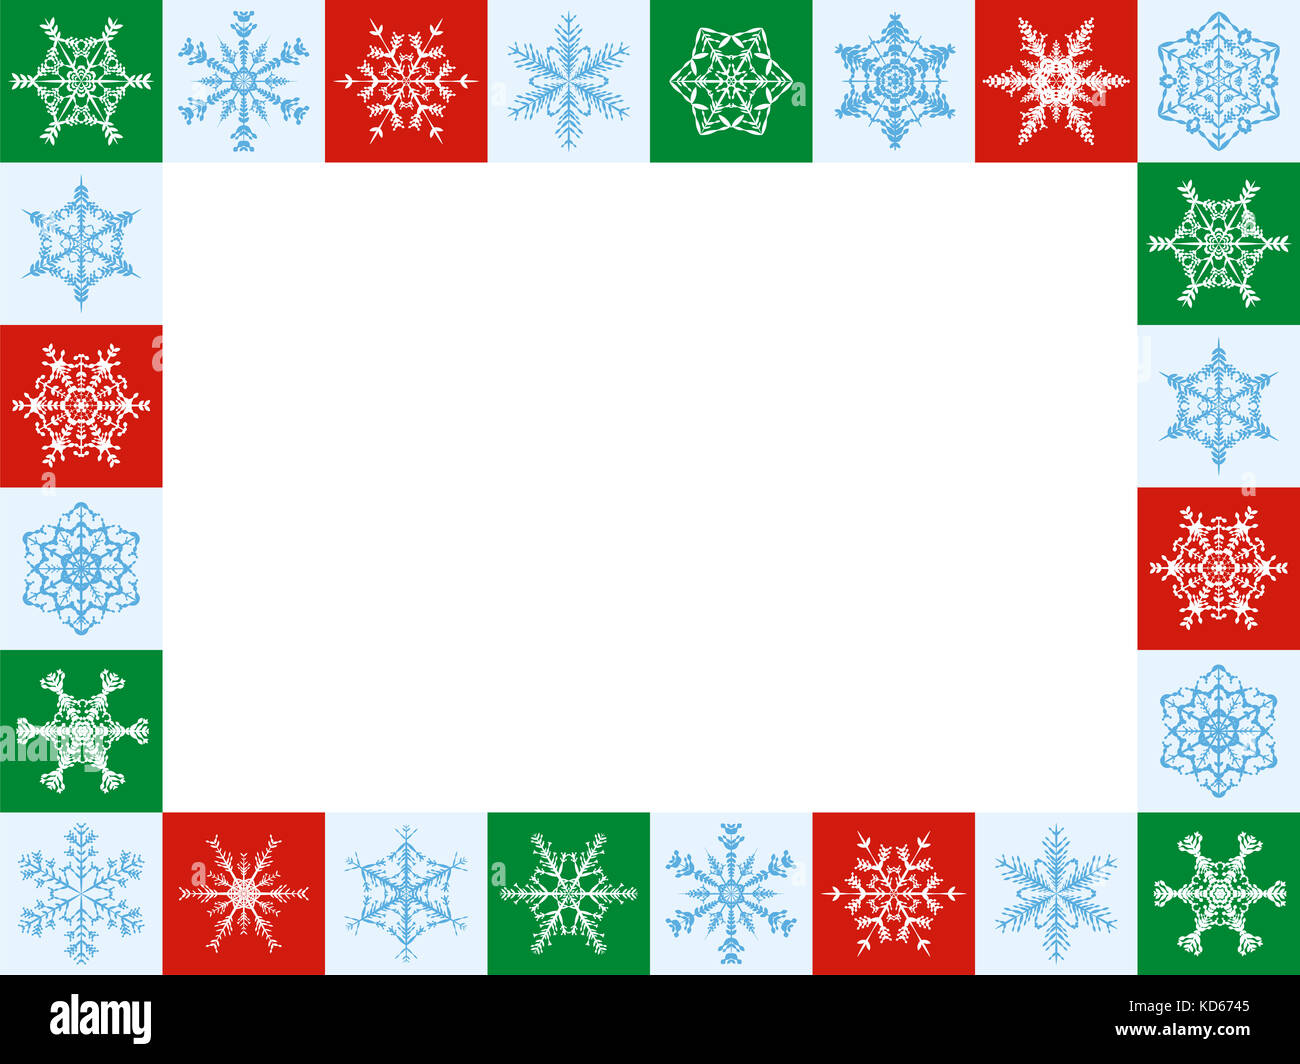 Schneeflocken Weihnachten Rahmen, horizontales Format - vierundzwanzig artful roten, grünen und weißen Fliesen - Abbildung mit weißen leere Mitte. Stockfoto